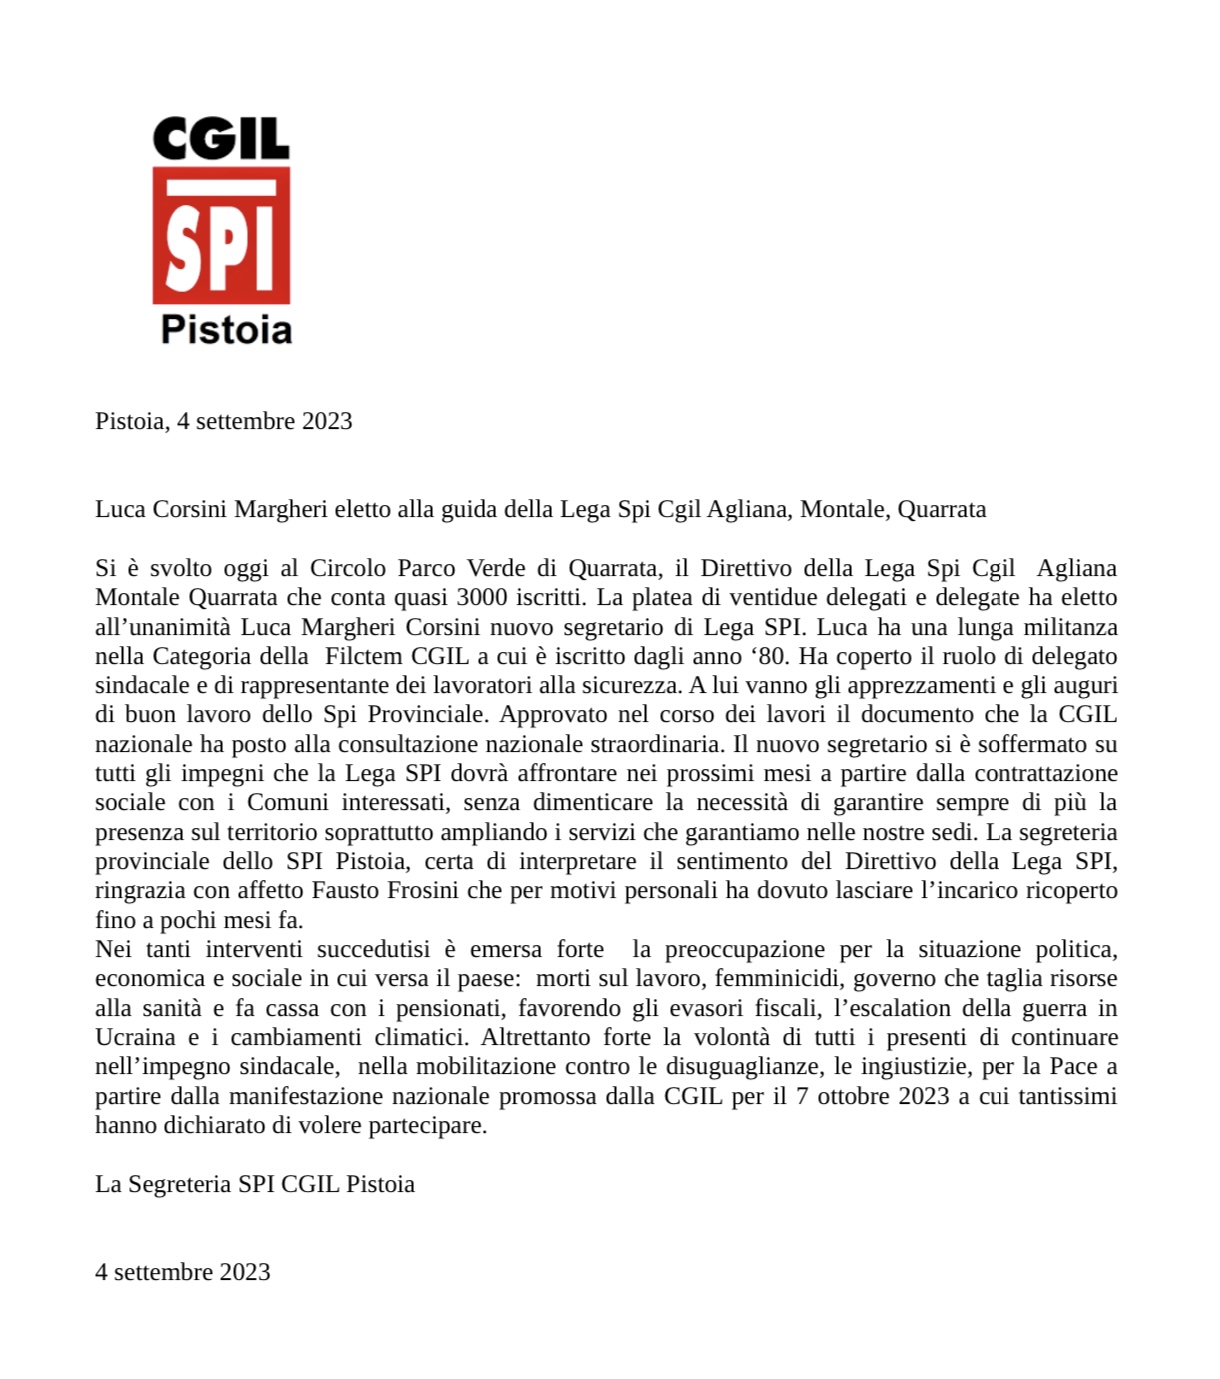 comunicato_elezione_Luca_Margheri_Corsini_4_settembre_2023_jpg.jpg